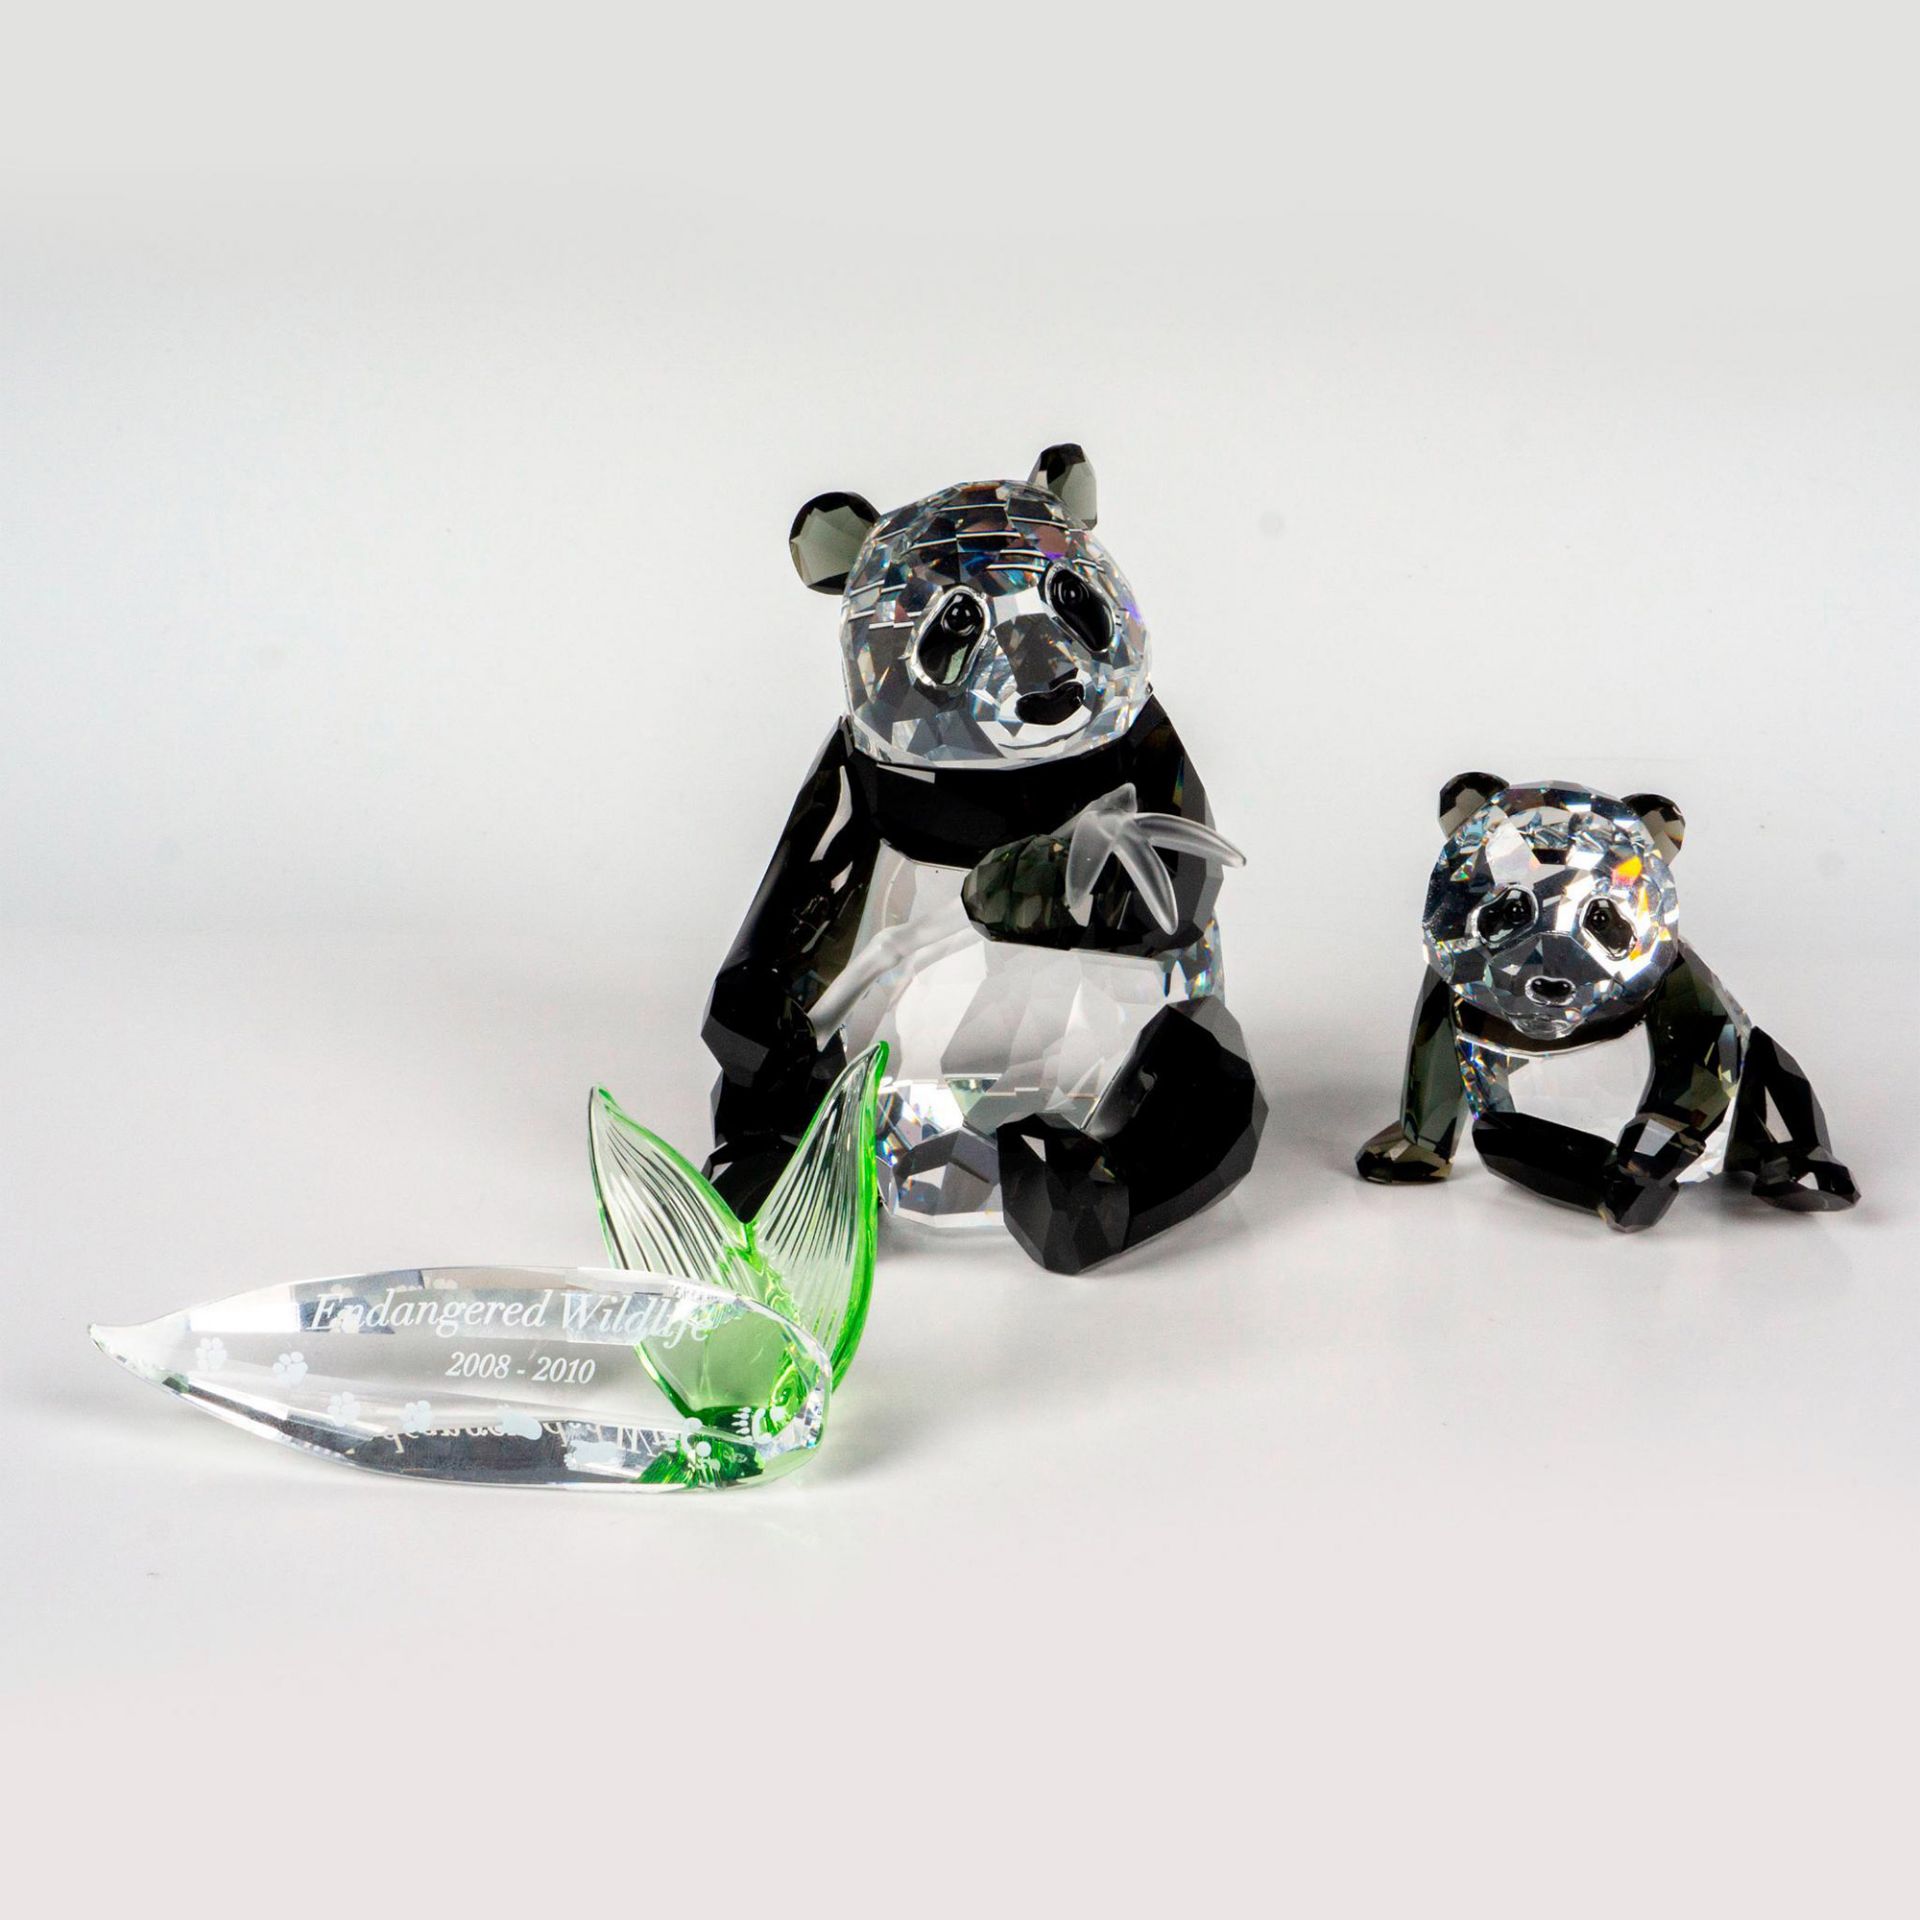 2pc Swarovski Crystal Figurines, Pandas + Plaque